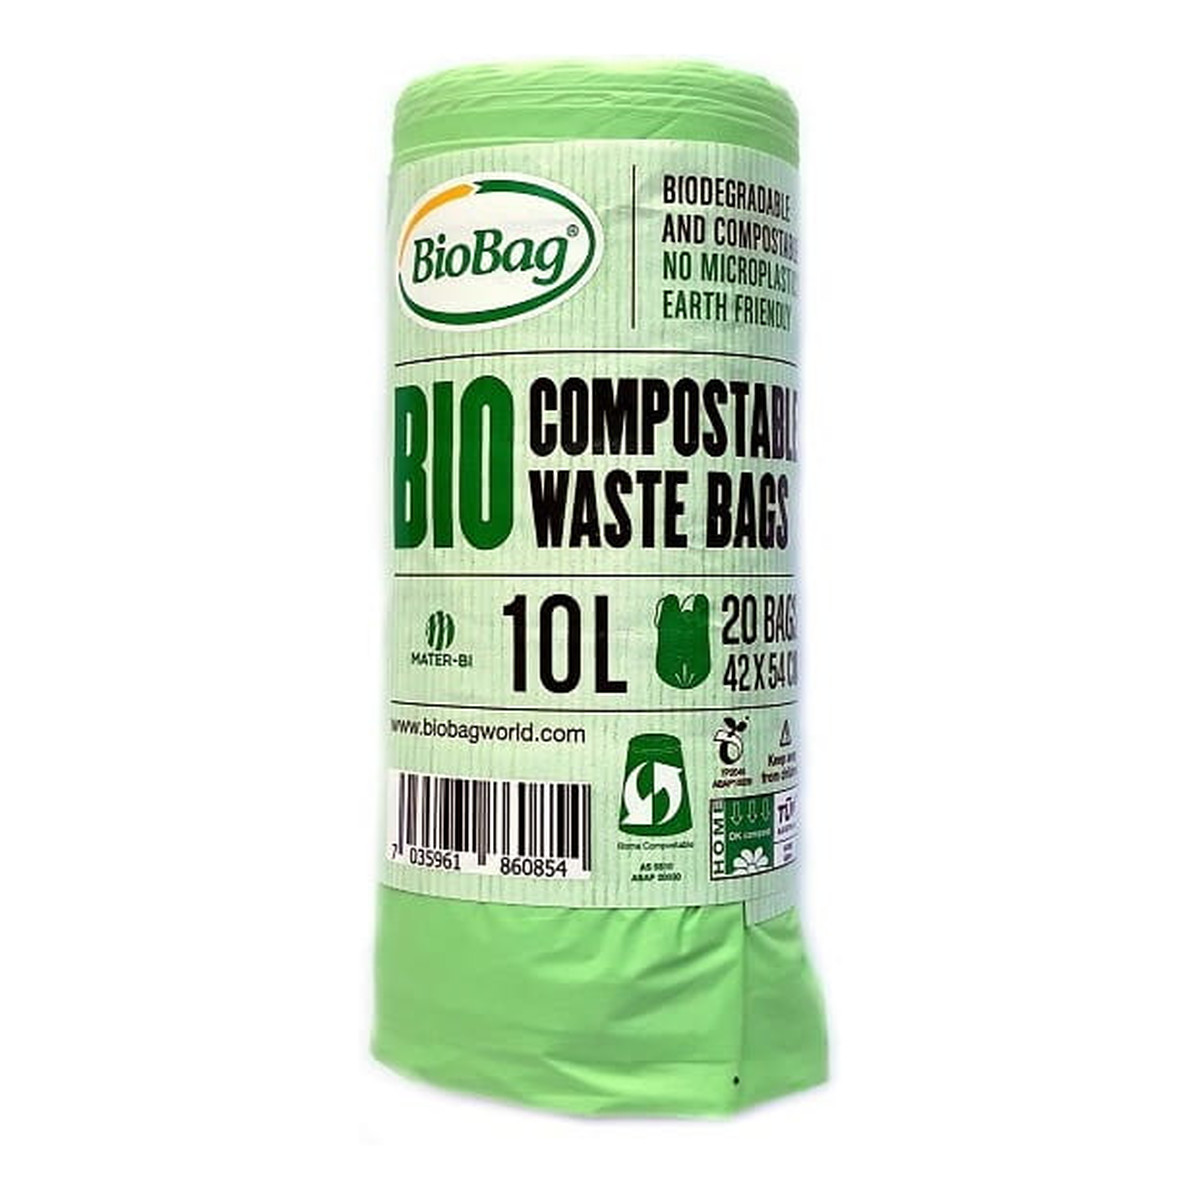 BioBag Worki na odpady organiczne i zmieszane, 100% biodegradowalne i kompostowalne,10L rolka 20 szt z banderolą 200g